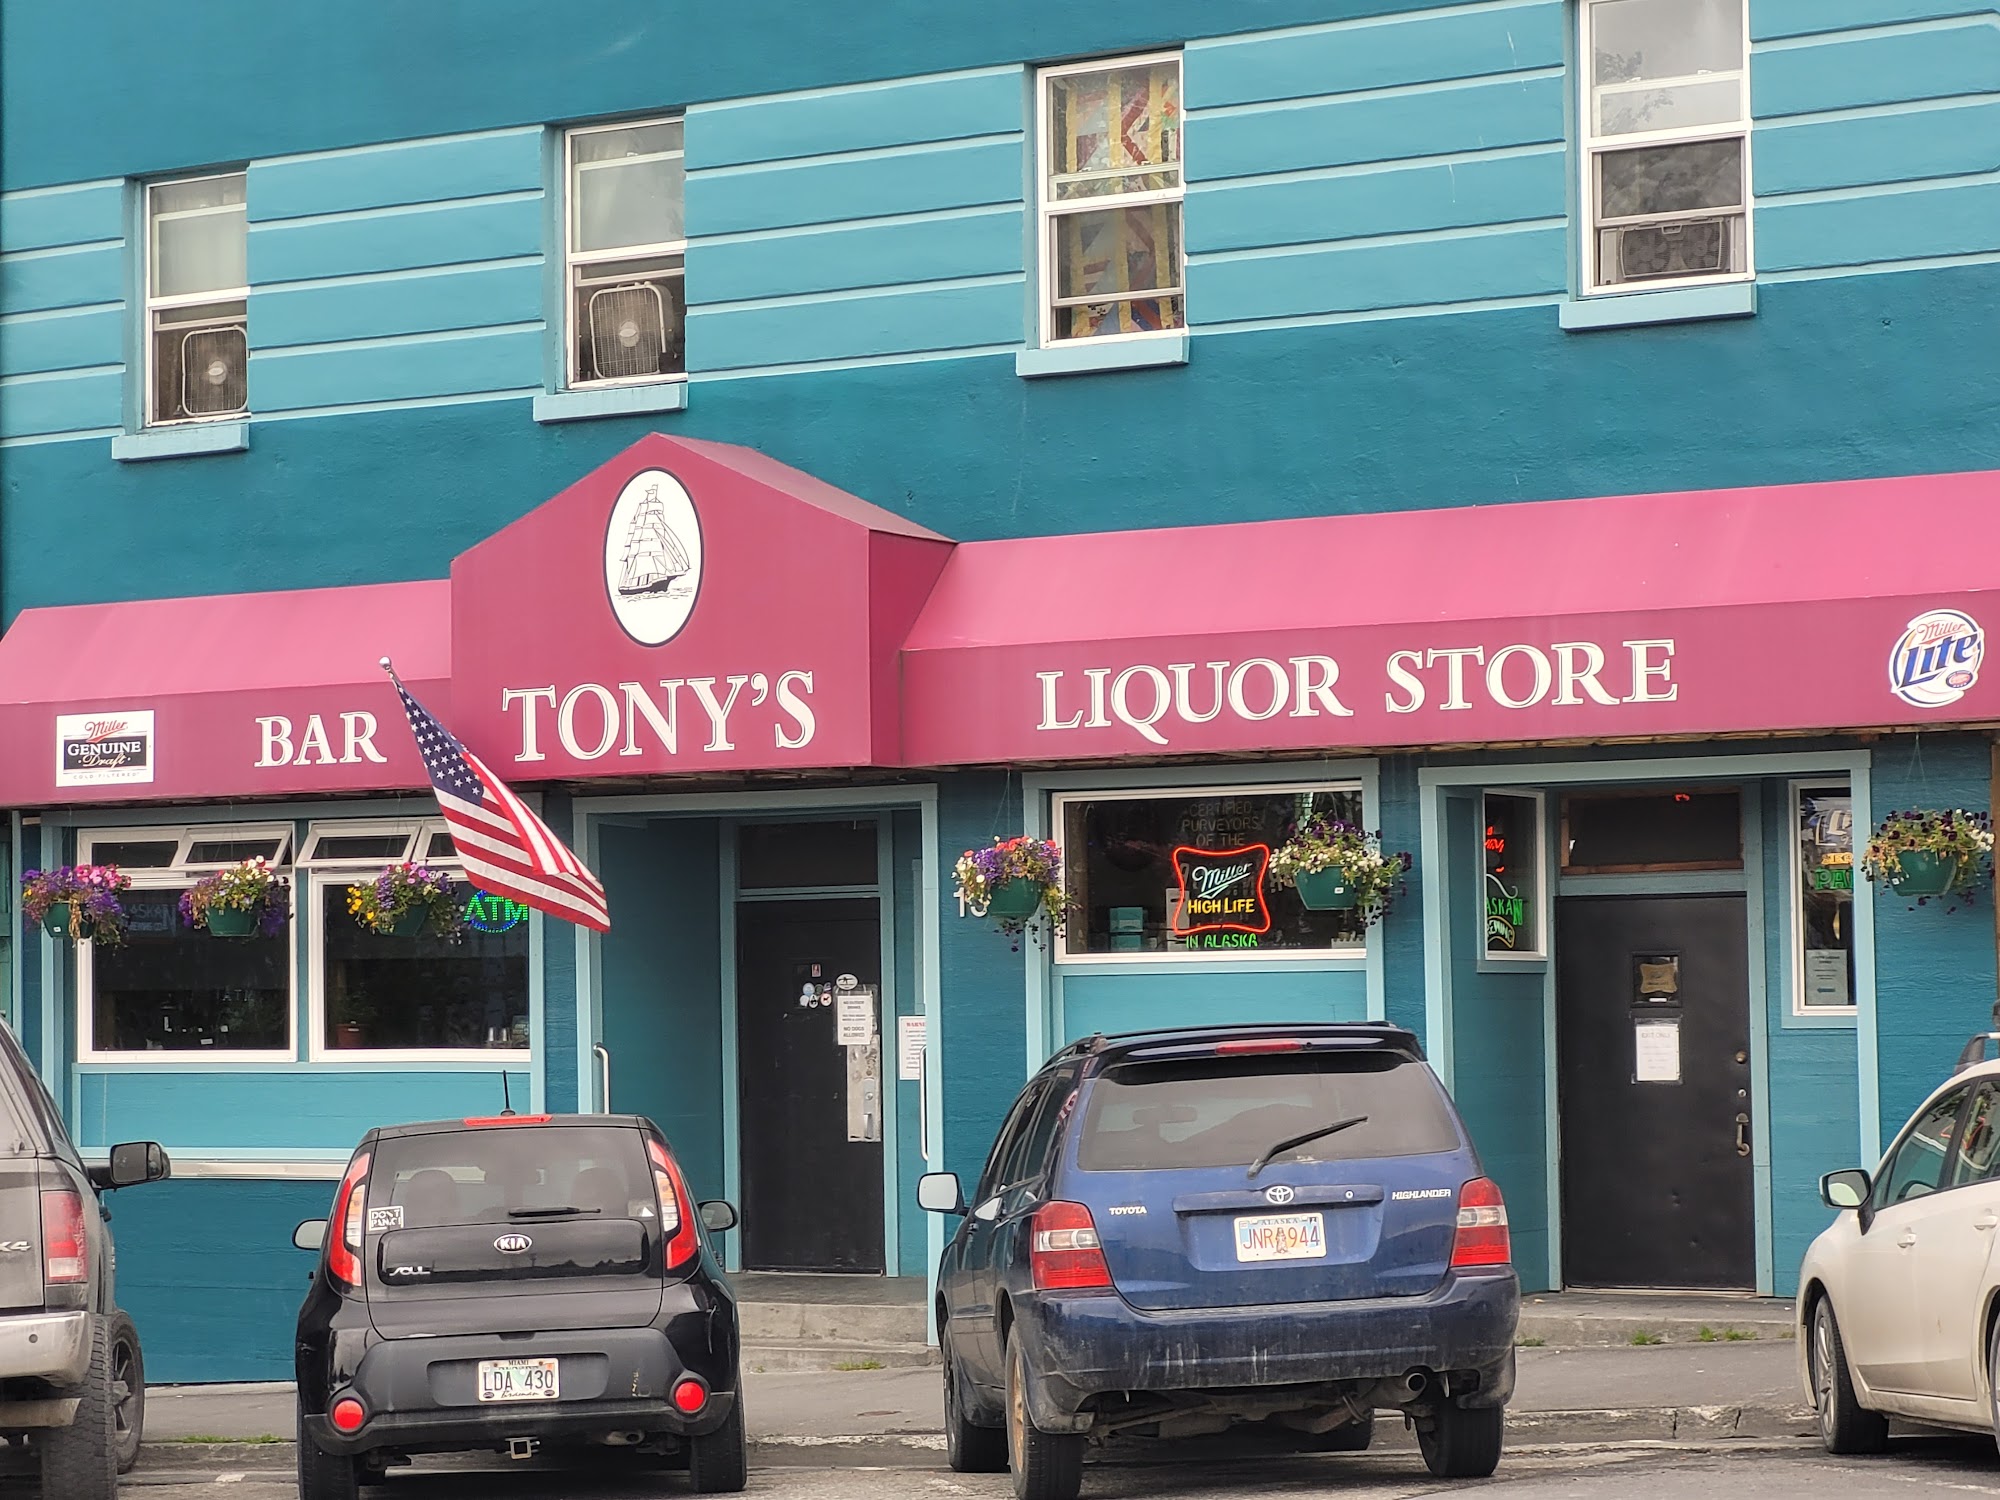 Tony's Bar & Liquor Store